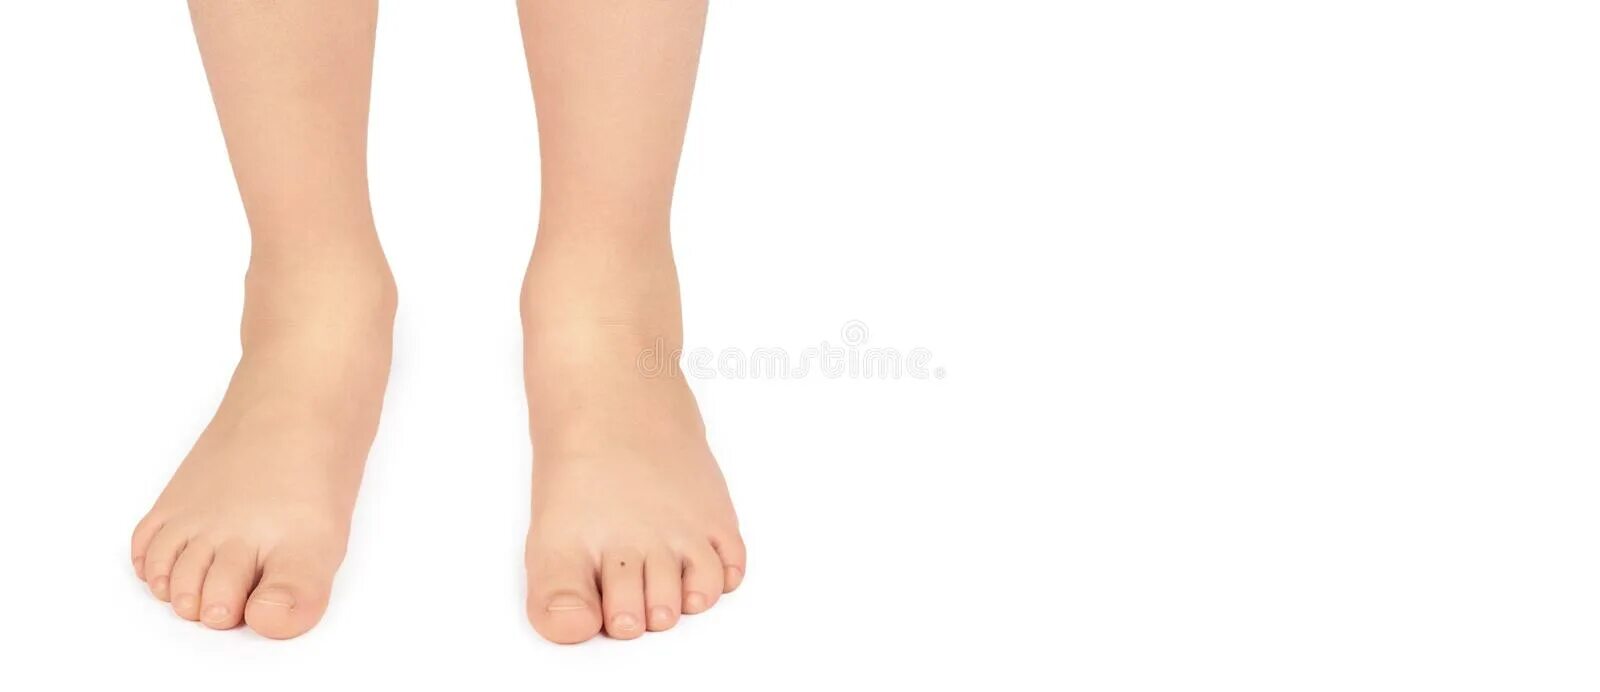 Grow foot. Детские ноги на белом фоне. Legs Kids на белом фоне. Feet Kids на белом фоне. Милим ноги.